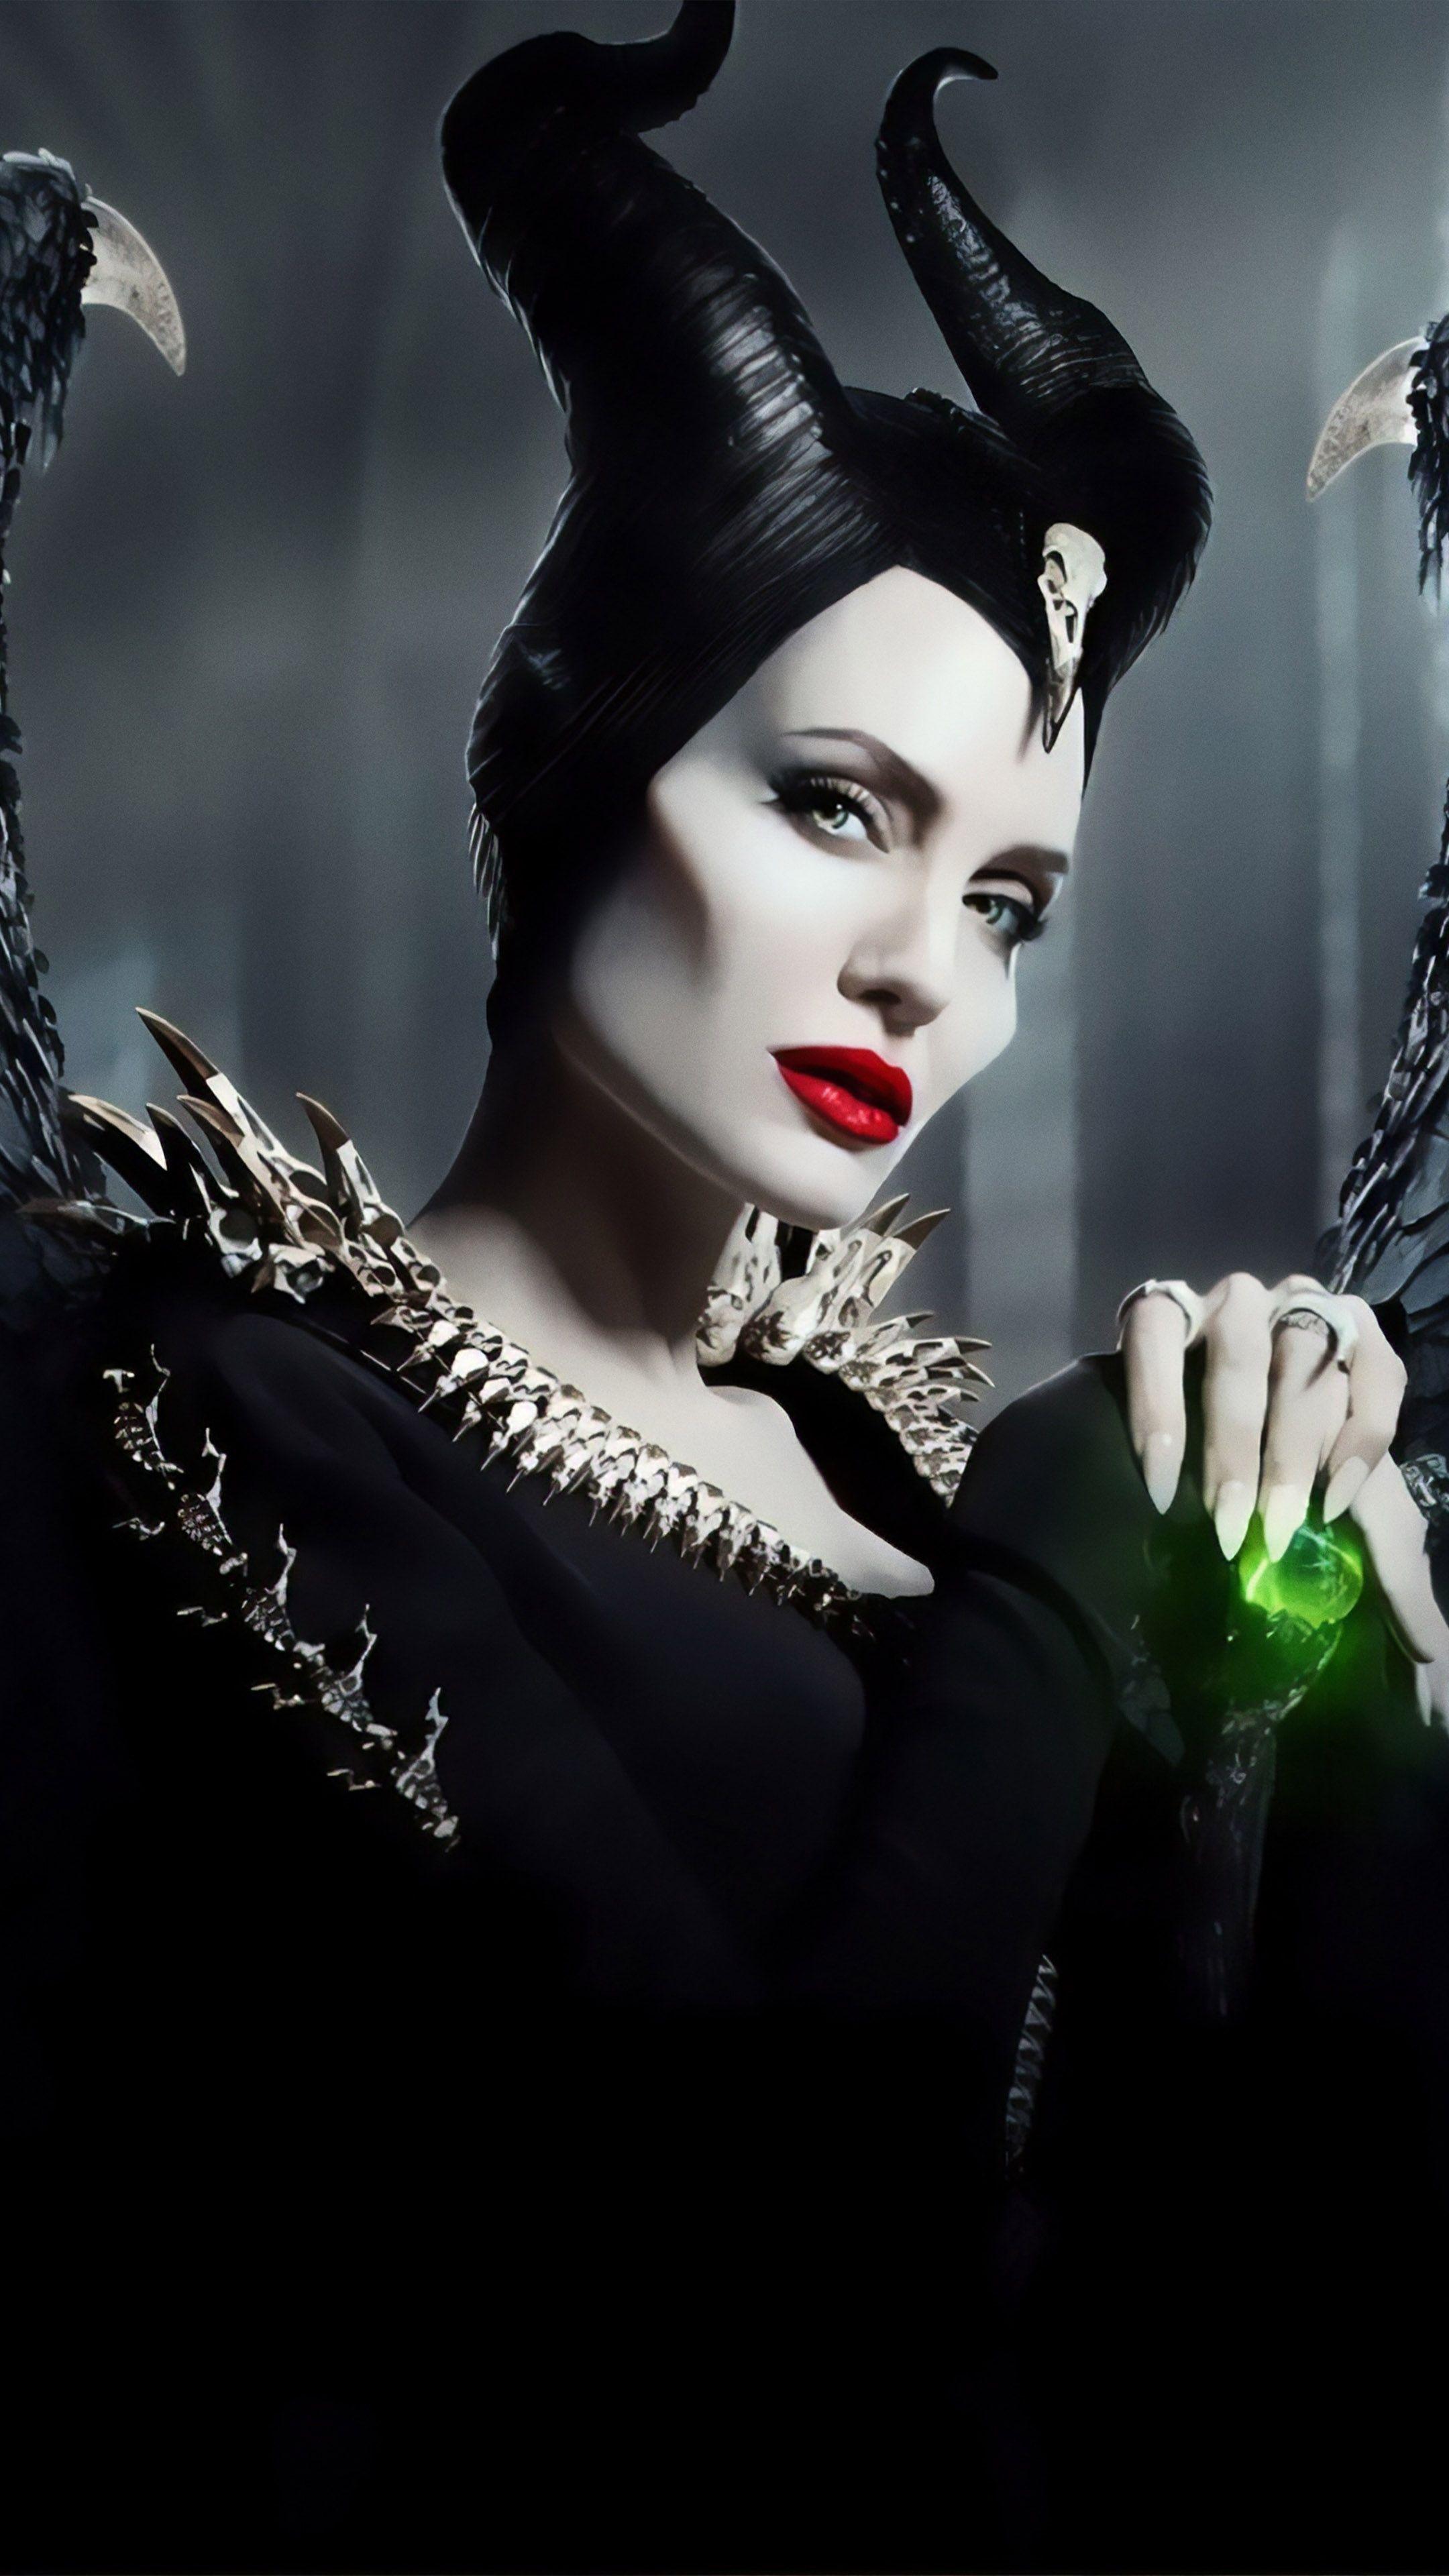 Maleficent: Mistress Of Evil Wallpaper Free